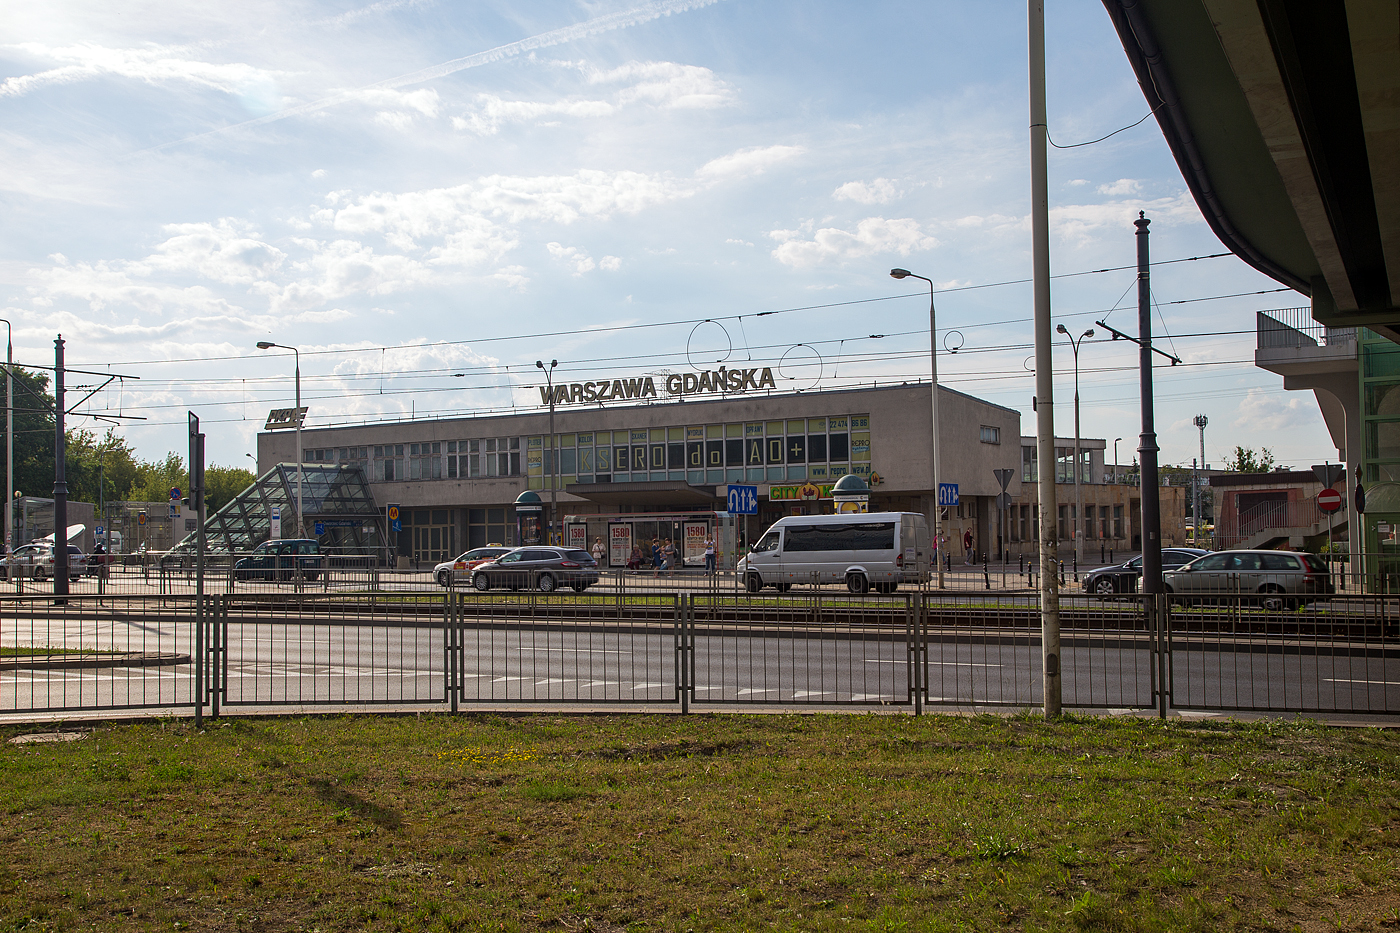 Der Bahnhof Warszawa Gdańska (Danziger Bahnhof in Warschau) am 25 Juni 2017. Die Station wird heute für den regionalen Schienenverkehr genutzt. Seinen heutigen Namen erhielt er nach Ende des Ersten Weltkriegs, zu der Zeit verkehrten hier die Züge von und nach Danzig. Nach dieser Streckenverbindung wurde auch die nahegelegene Weichselbrücke Most Gdański bezeichnet. Der Bahnhof liegt an der Grenze der Warschauer Stadtbezirke Śródmieście und Żoliborz.